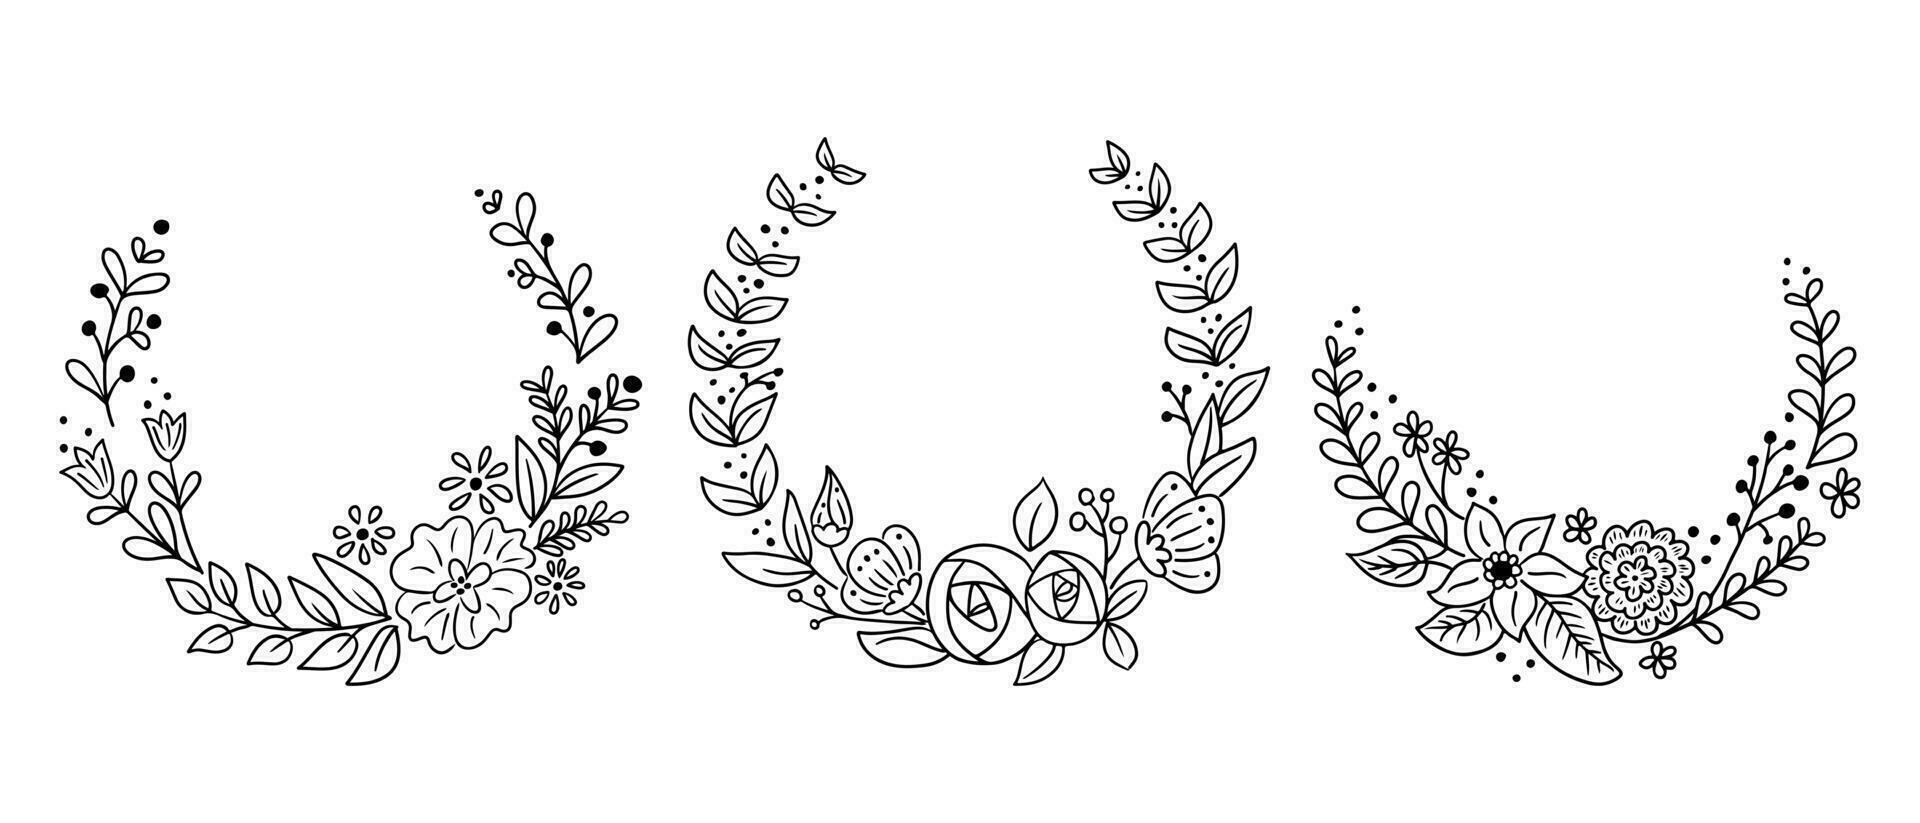 romantisk uppsättning av blommig klotter kransar eller ramar. vektor kontur oärlig mallar. svart konturer element med blommor och löv för för bröllop, årsdag kort, inbjudan på vit bakgrund